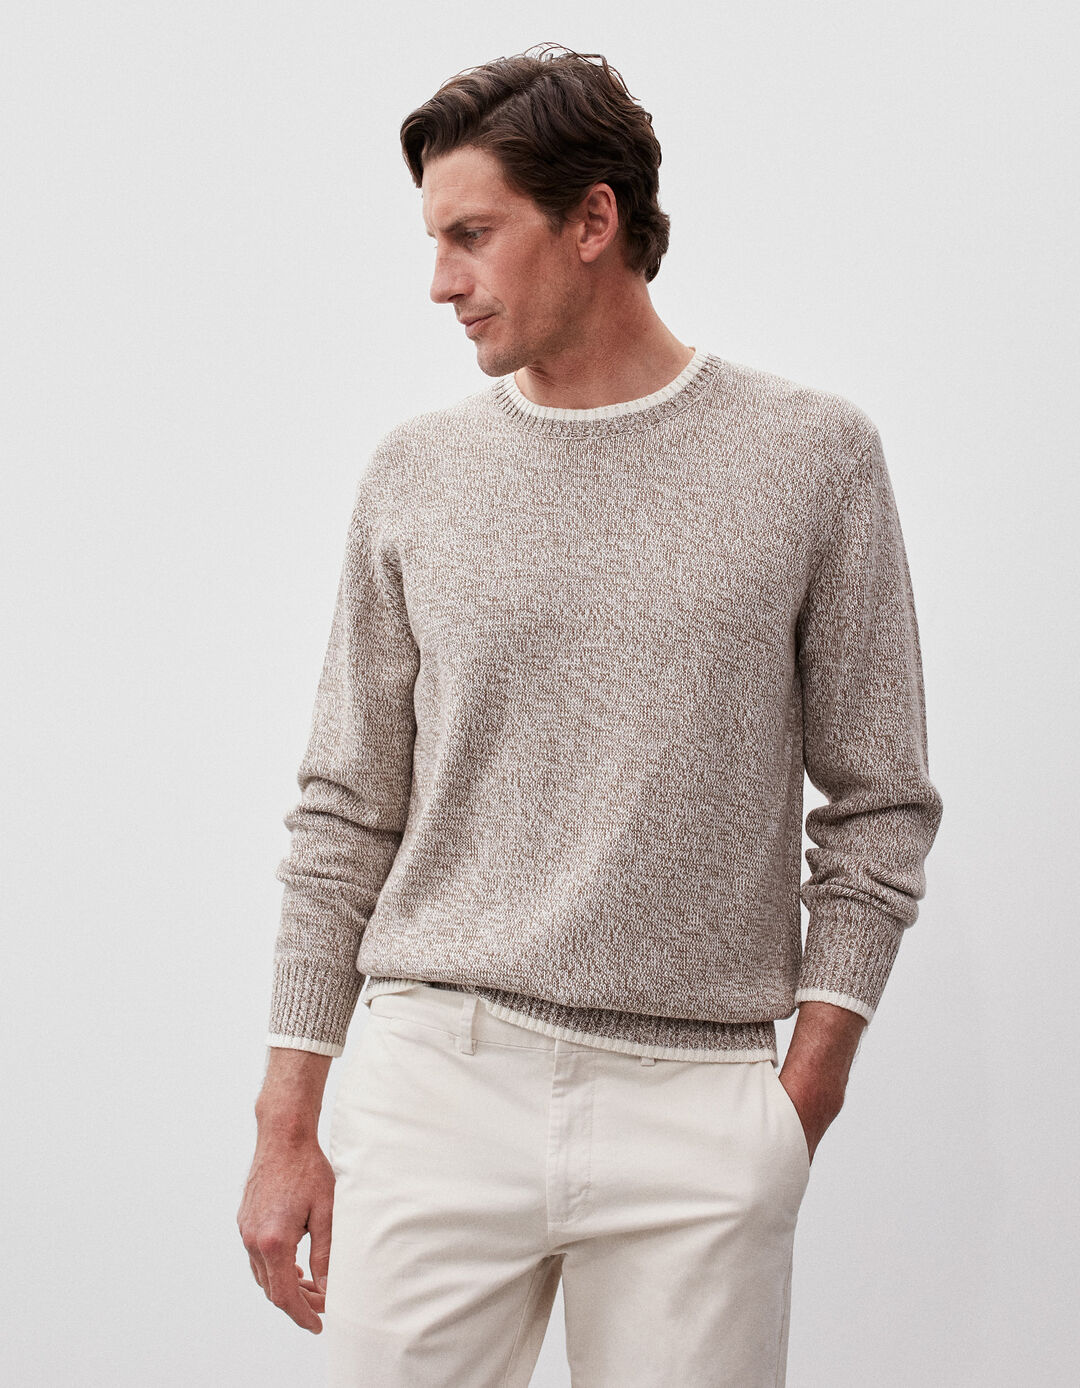 Mixed Knit Sweater, Men, Dark Beige